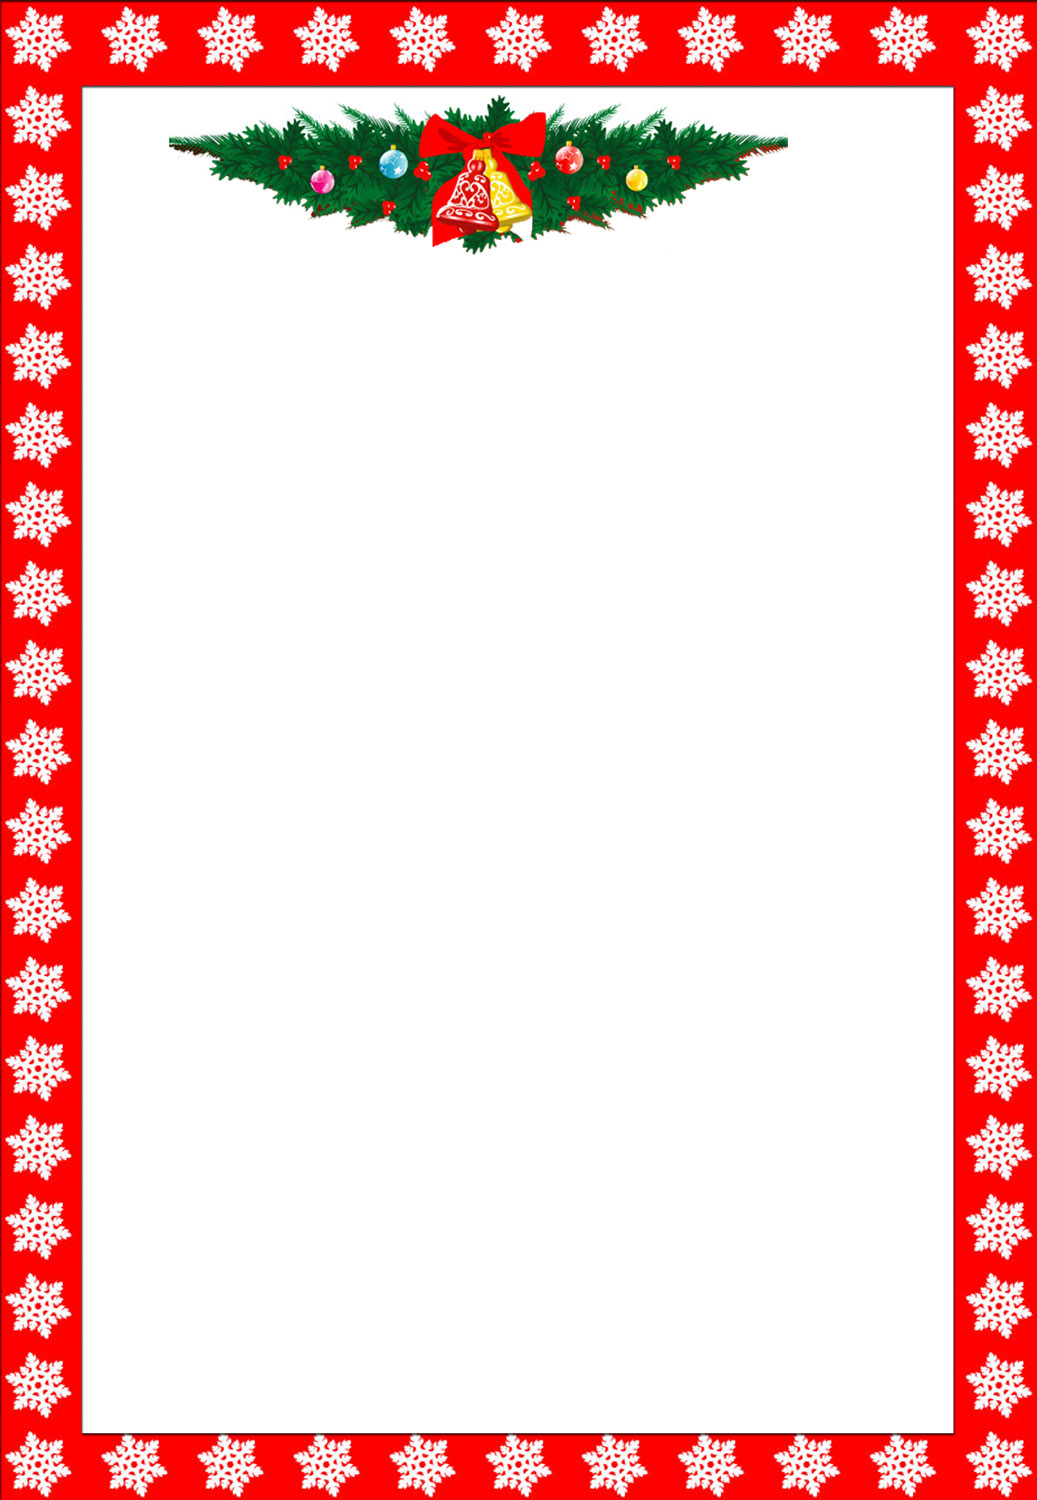 Free Printable Christmas Stationary Borders Trials Ireland - Free Printable Christmas Stationary